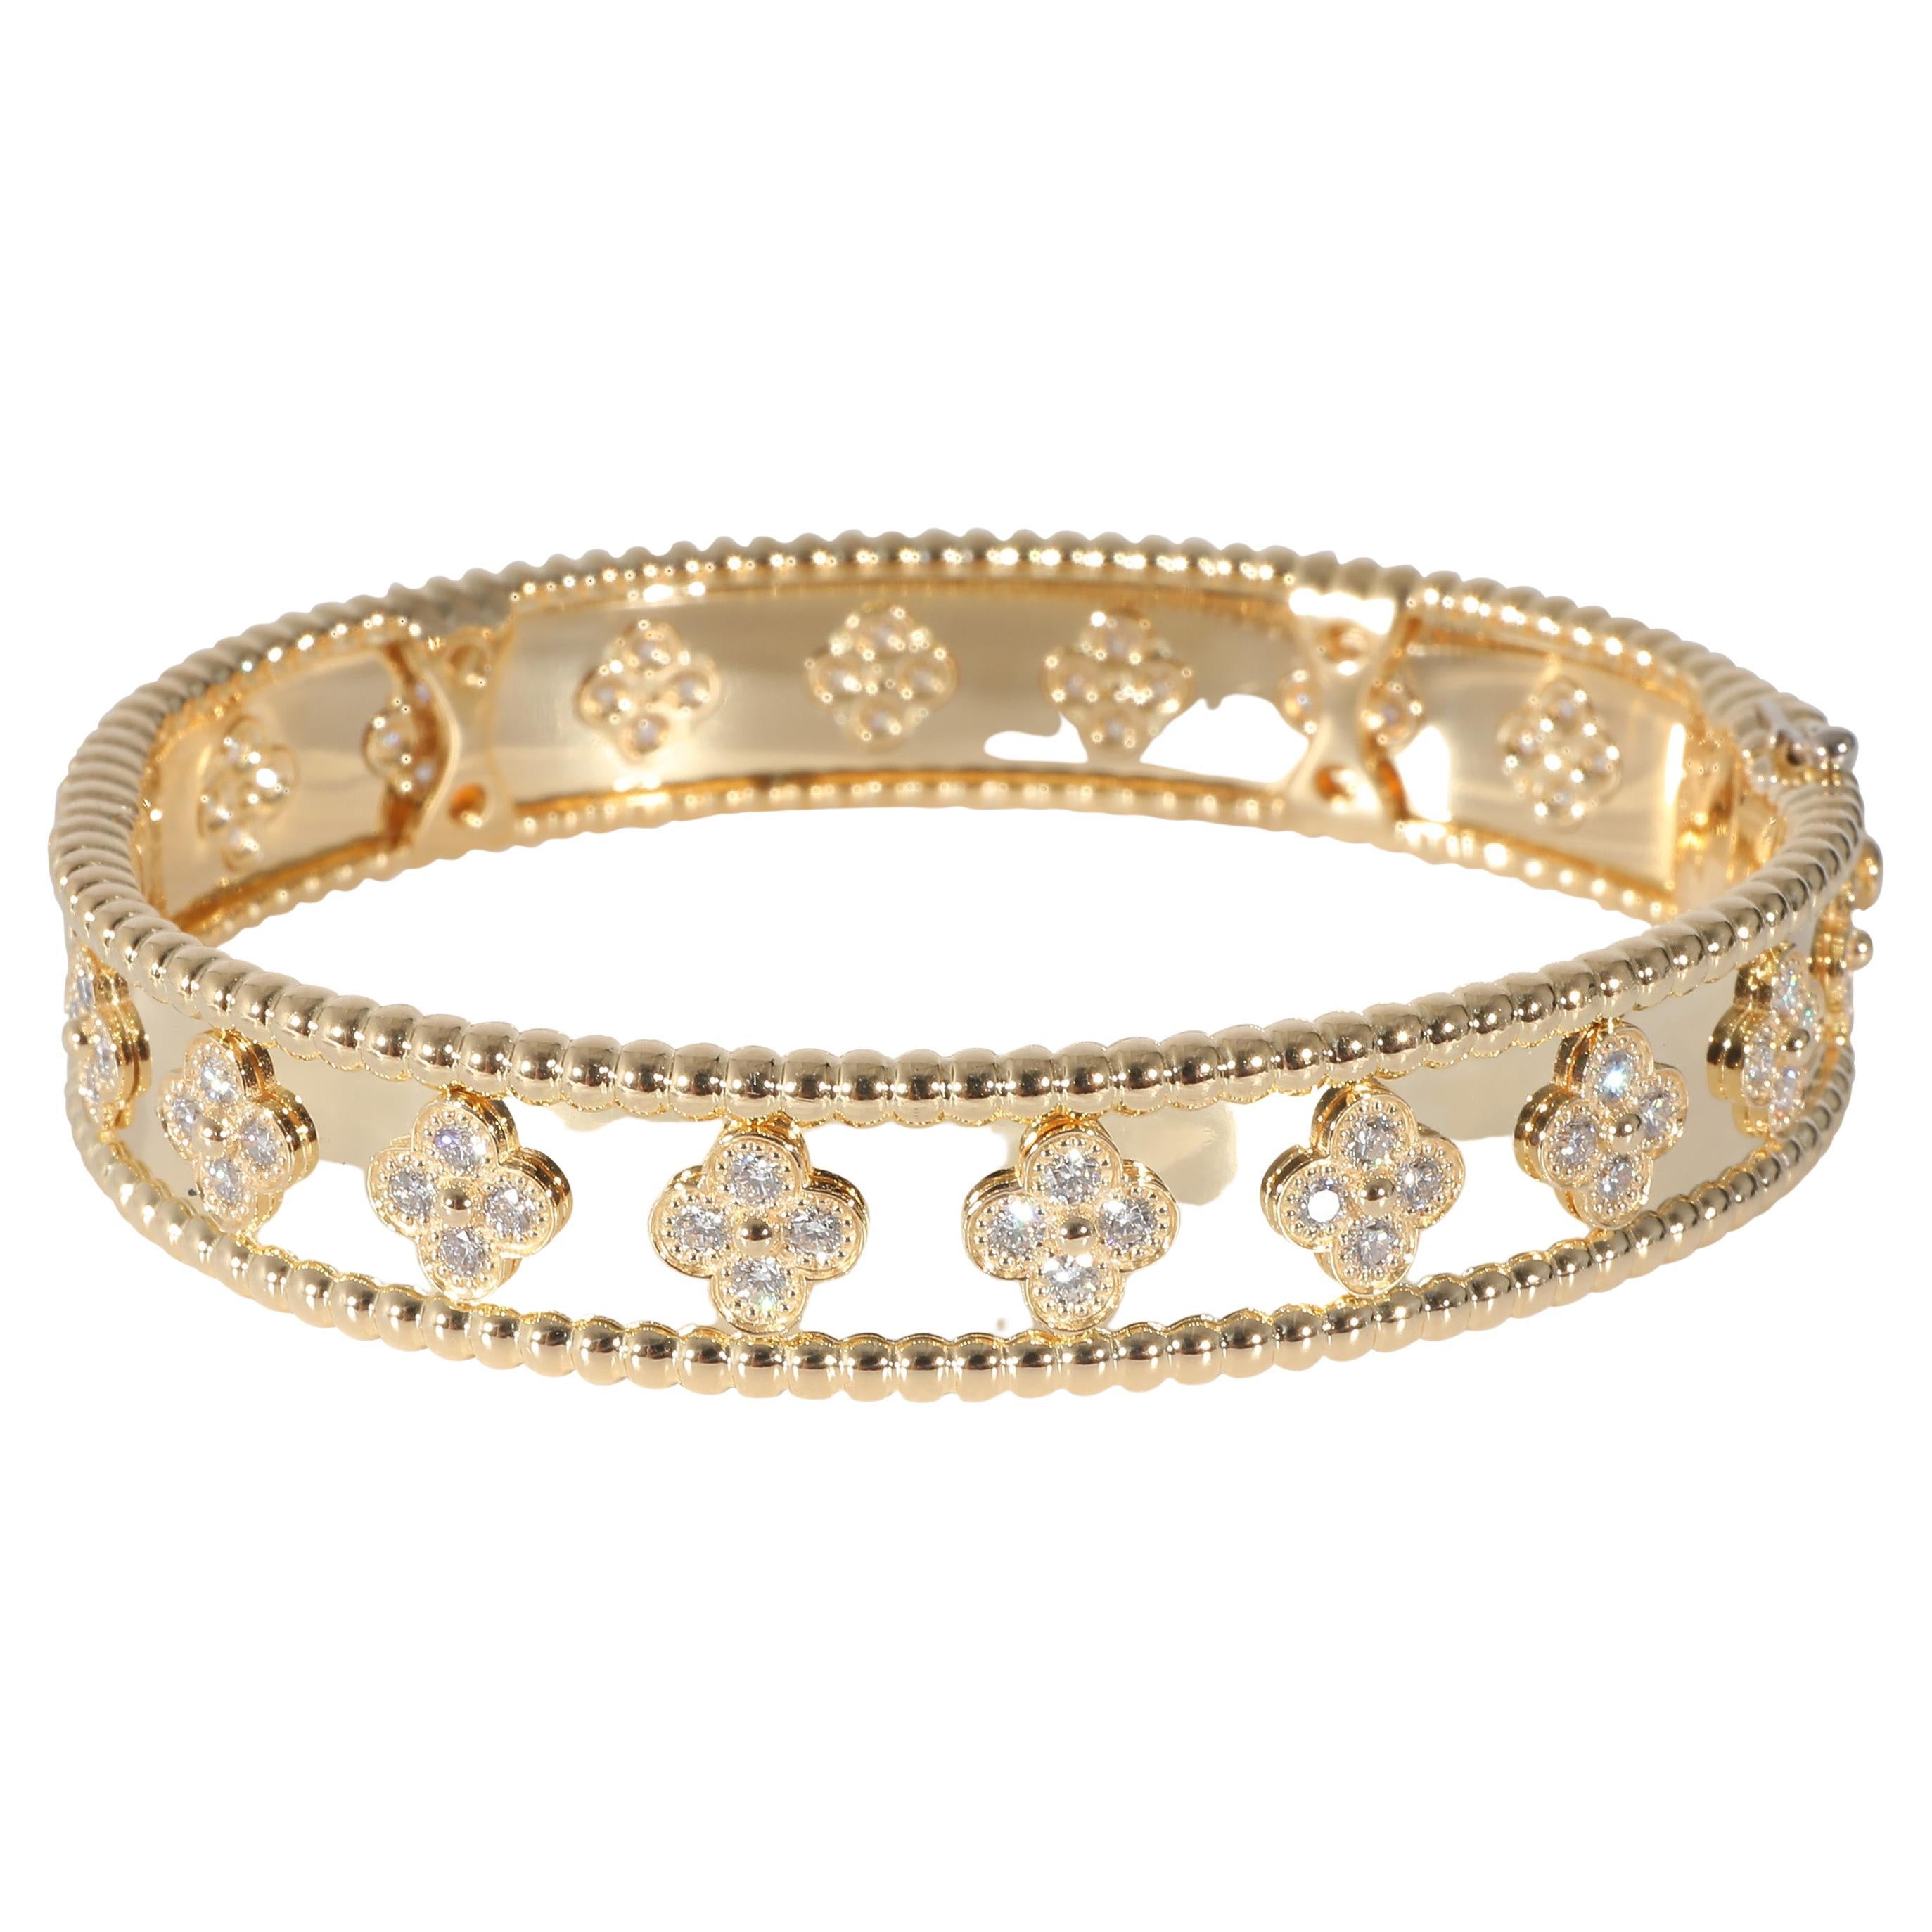 Van Cleef & Arpels Perlee Clover Diamond Bracelet in 18k Yellow Gold 1.61 CTW For Sale